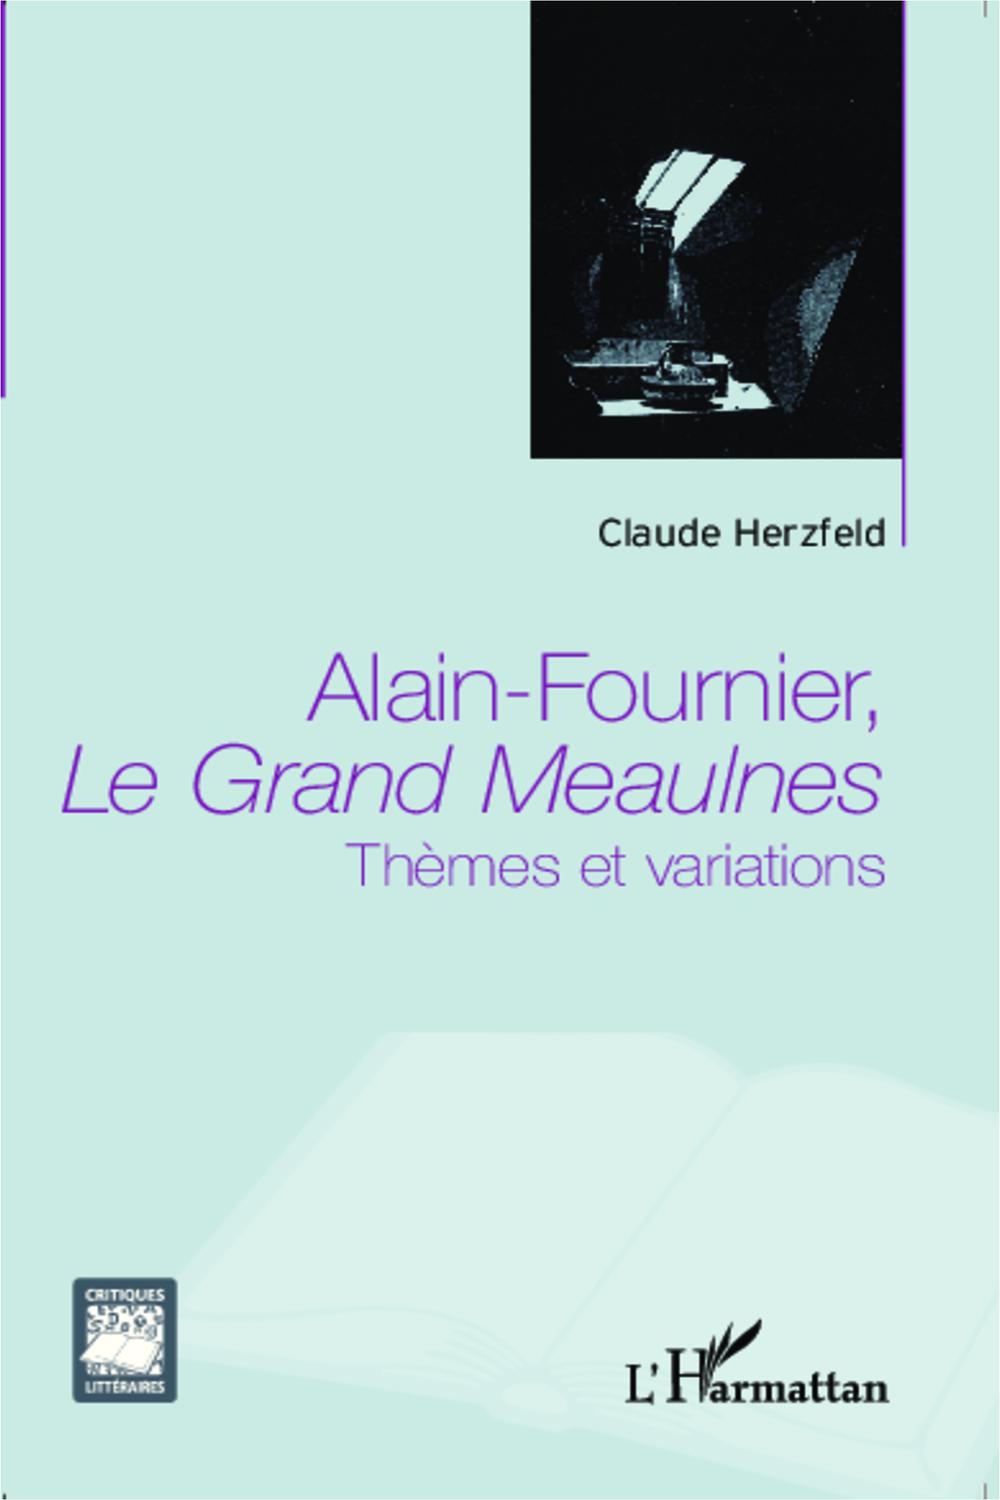 Alain Fournier, Le Grand Meaulnes - Claude Herzfeld